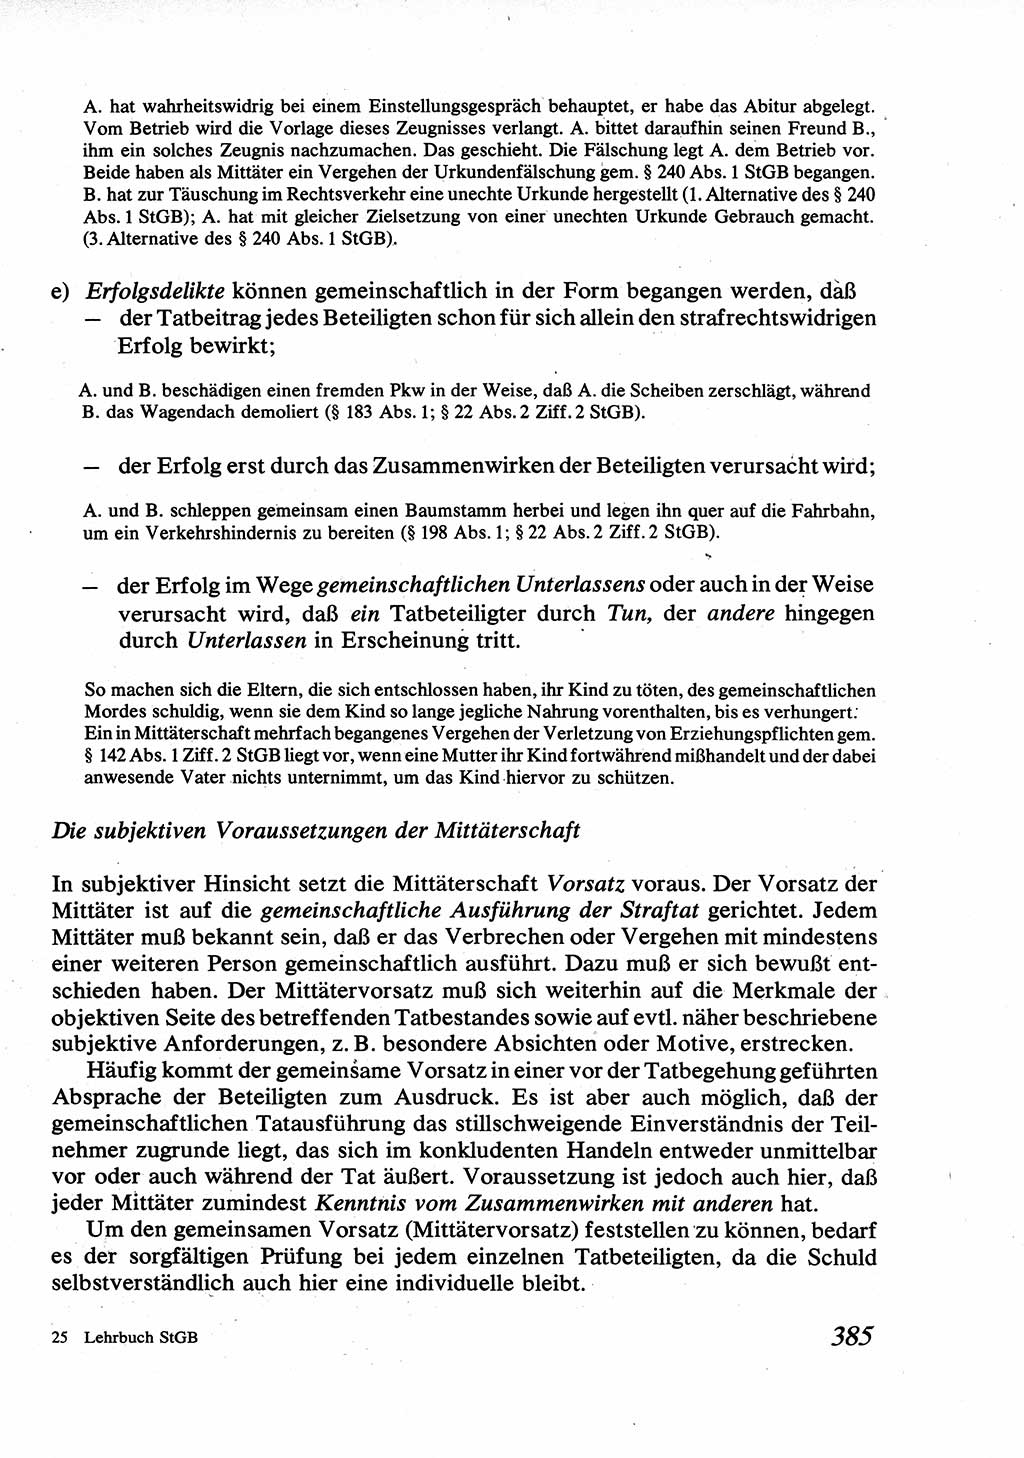 Strafrecht [Deutsche Demokratische Republik (DDR)], Allgemeiner Teil, Lehrbuch 1976, Seite 385 (Strafr. DDR AT Lb. 1976, S. 385)